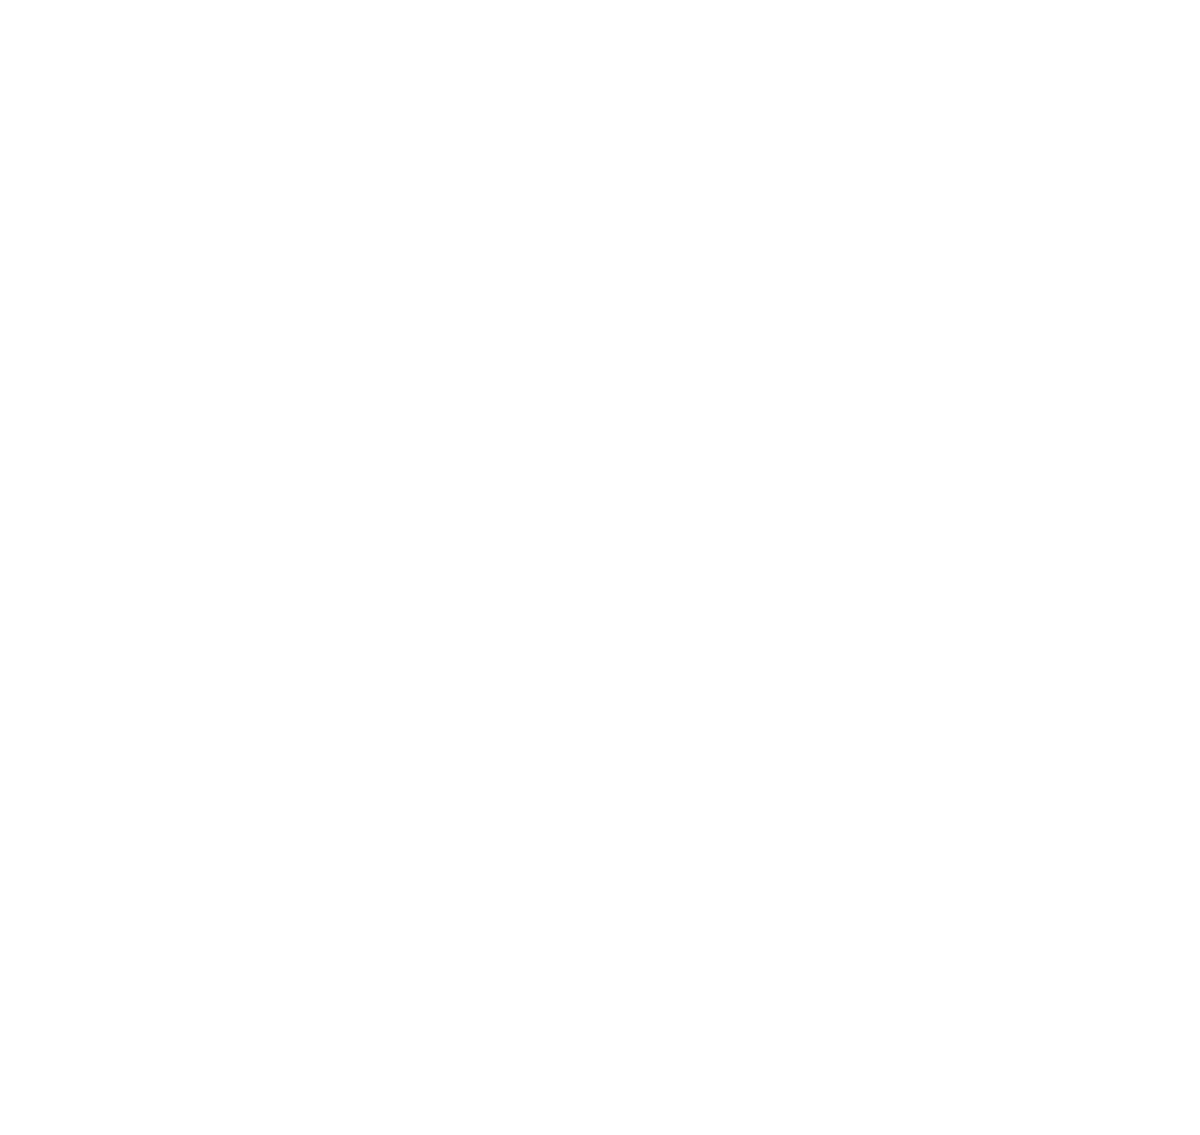 Liz Costigan Fleury